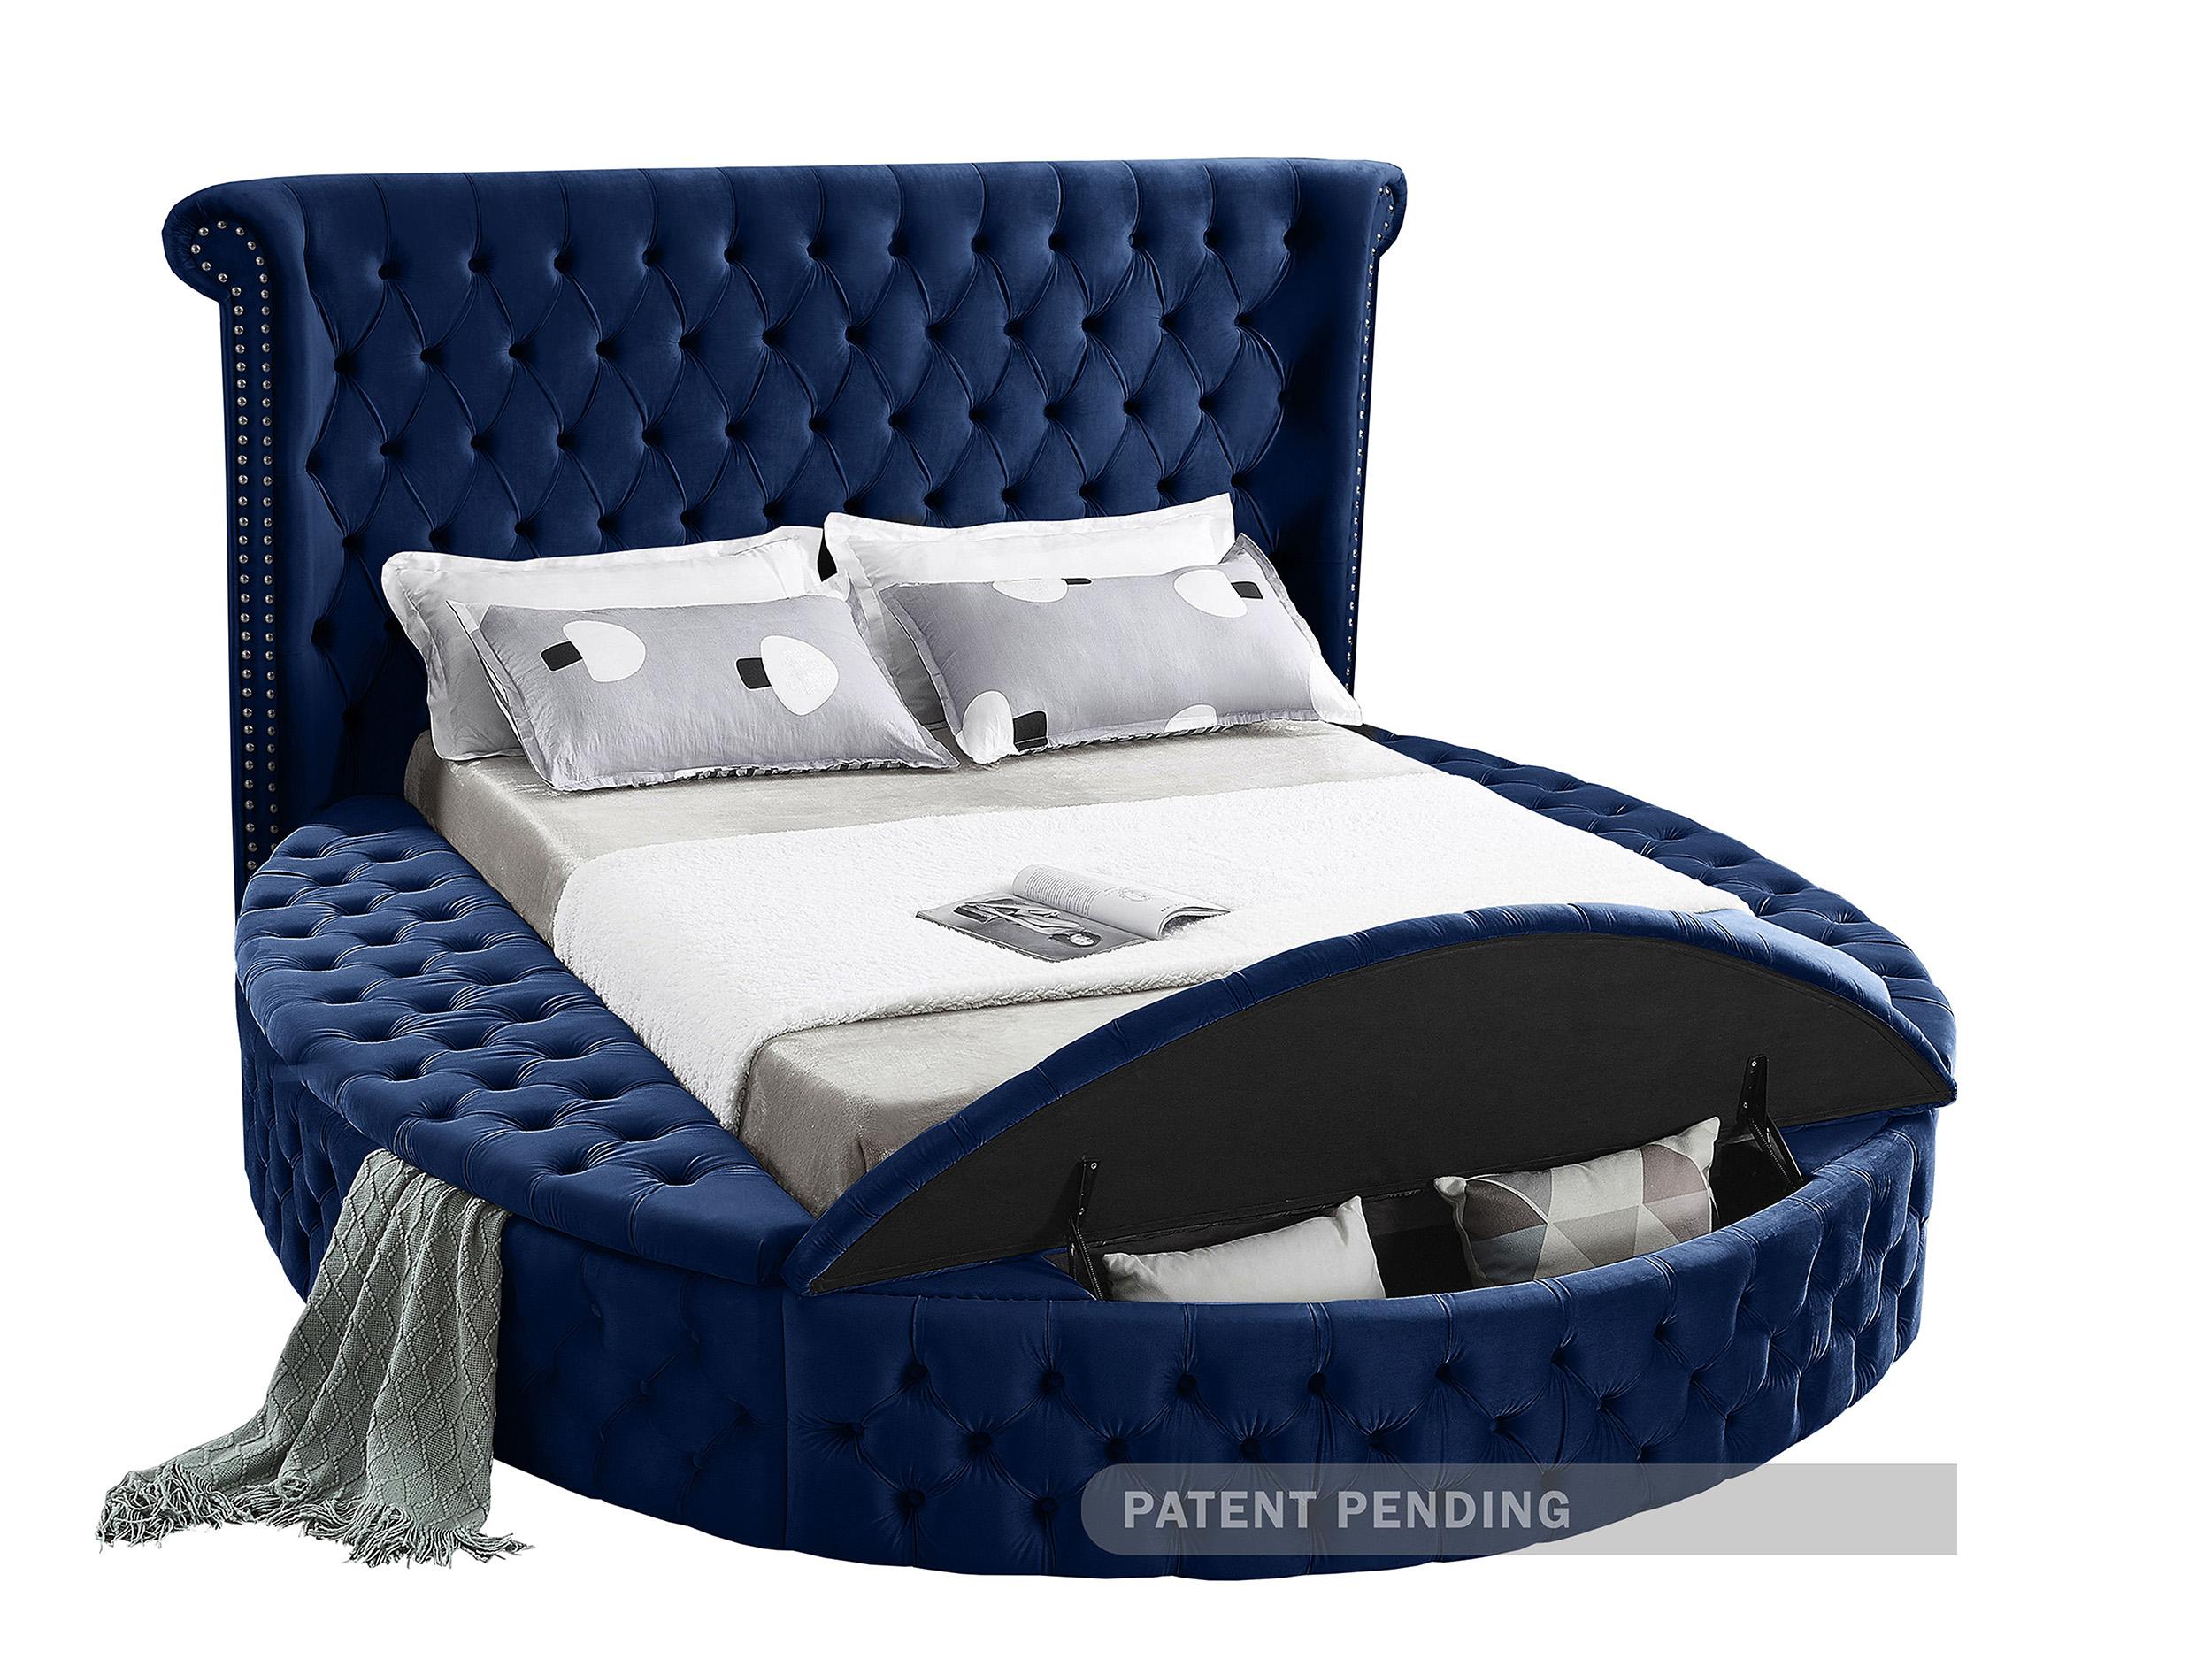 

    
Meridian Furniture LuxusNavy-Q Storage Bed Navy LuxusNavy-Q
